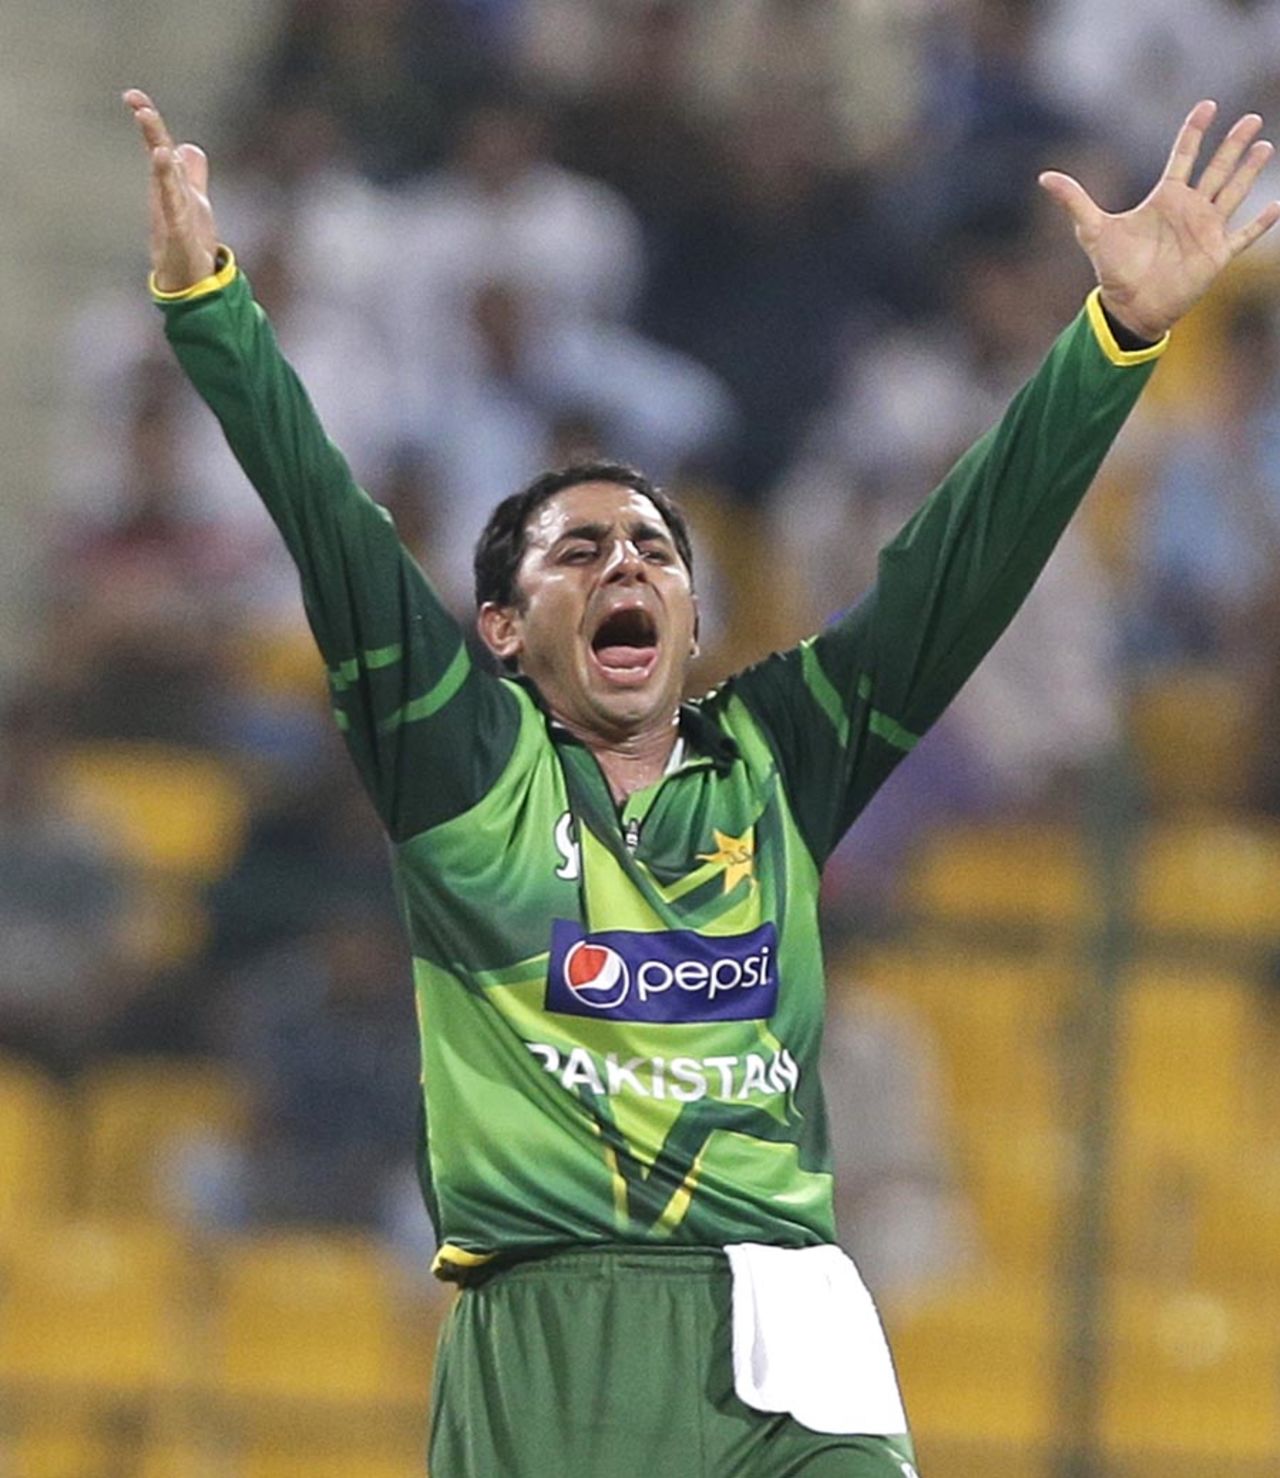 Saeed Ajmal reacts after claiming a wicket, Pakistan v Australia, 2nd ODI, Abu Dhabi, August 31, 2012